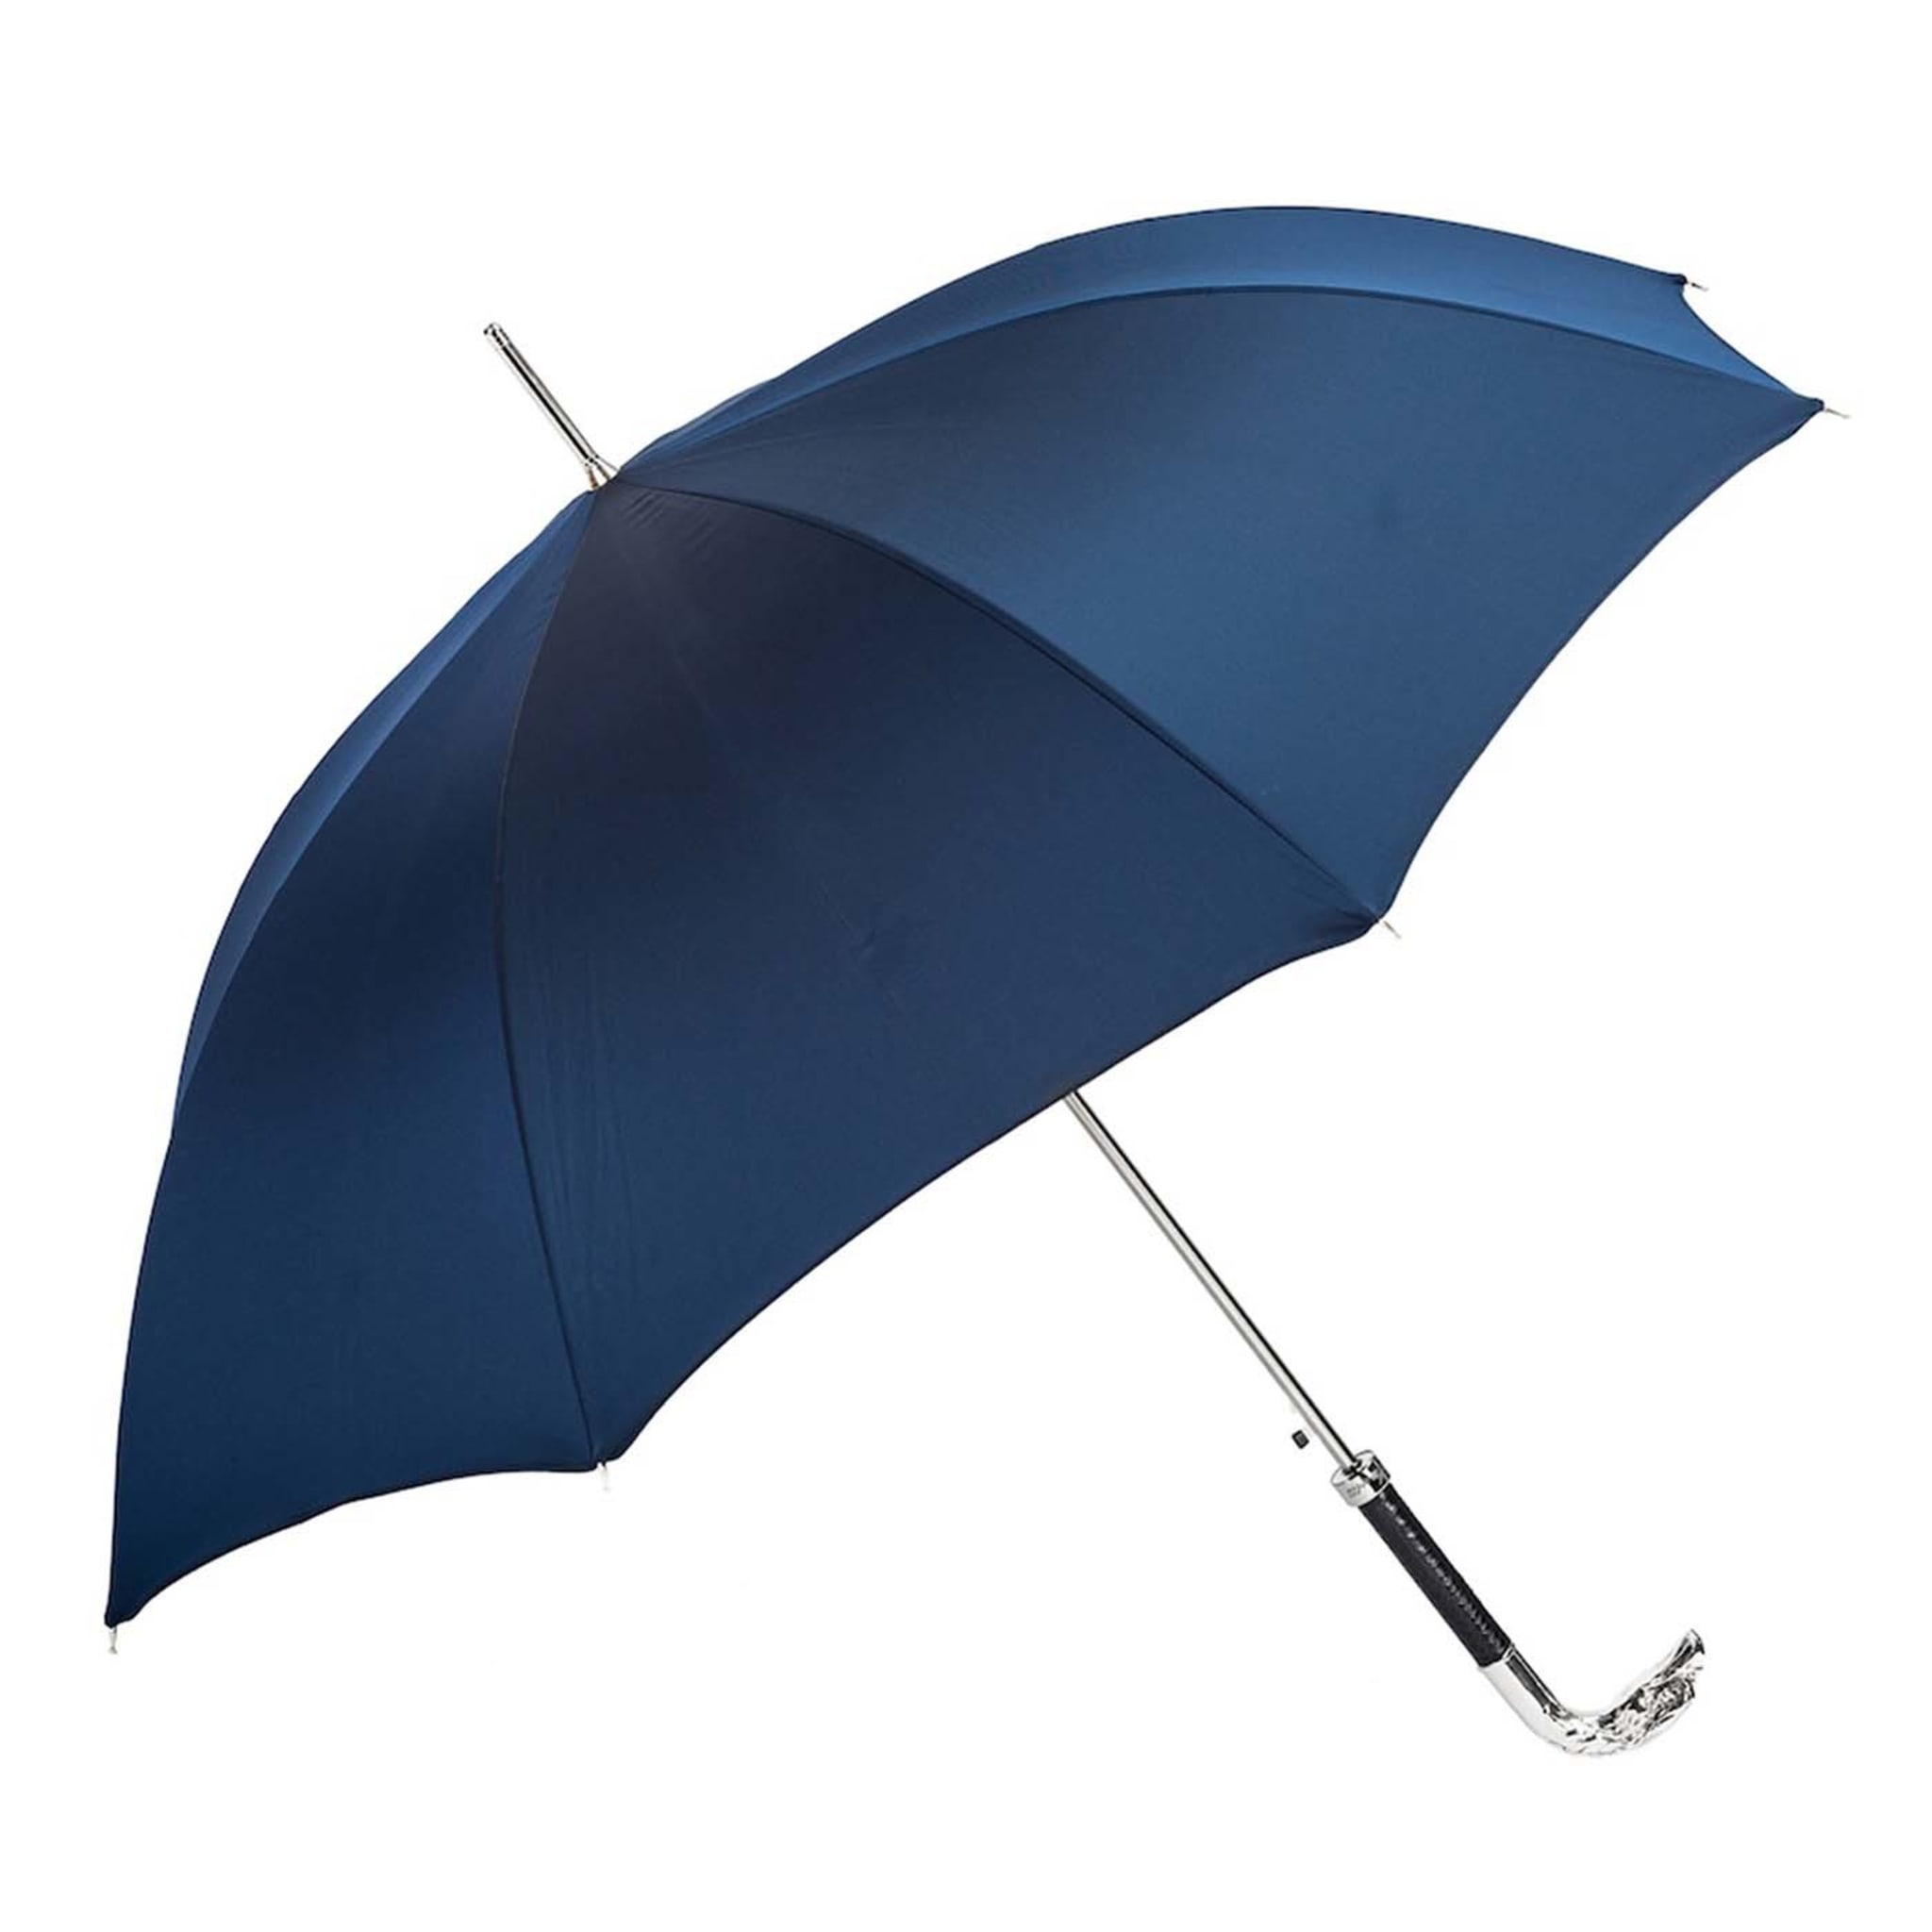 Marineblauer Regenschirm mit silbernem Adlergriff - Hauptansicht